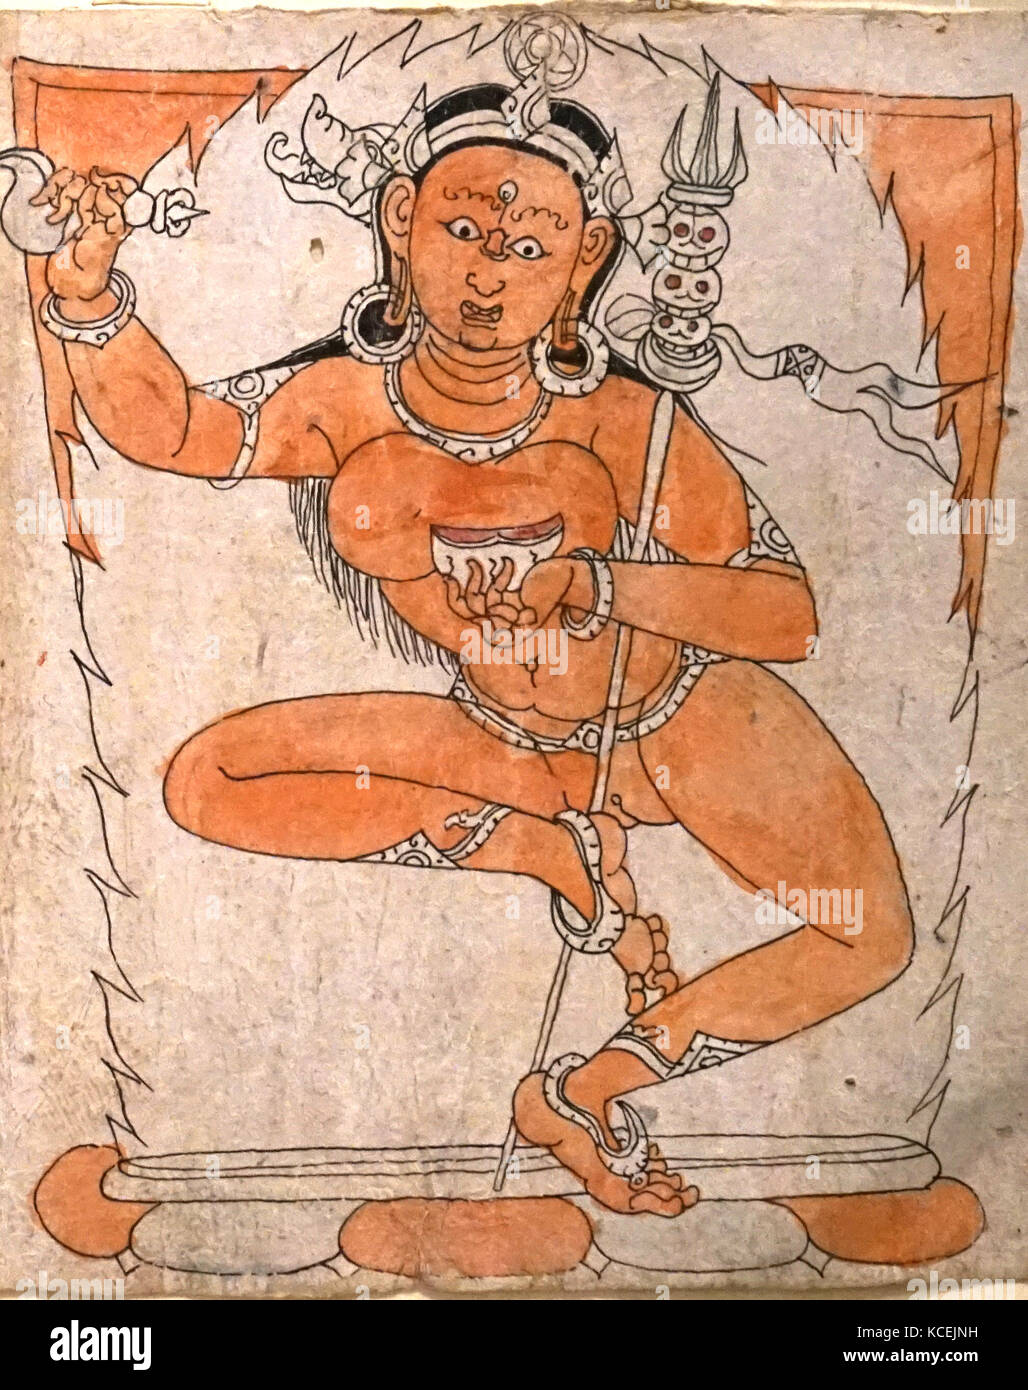 Weihe Zeichnung mit der Darstellung der Gautama Buddha, auch bekannt als Siddharta Gautama Shakyamuni Buddha, auf dessen Lehren Buddhismus gegründet wurde., 1450-1600 AD. in einer nepalesischen Stil gezeichnet. Papier, Tinte und Wasserfarben Tibet Stockfoto